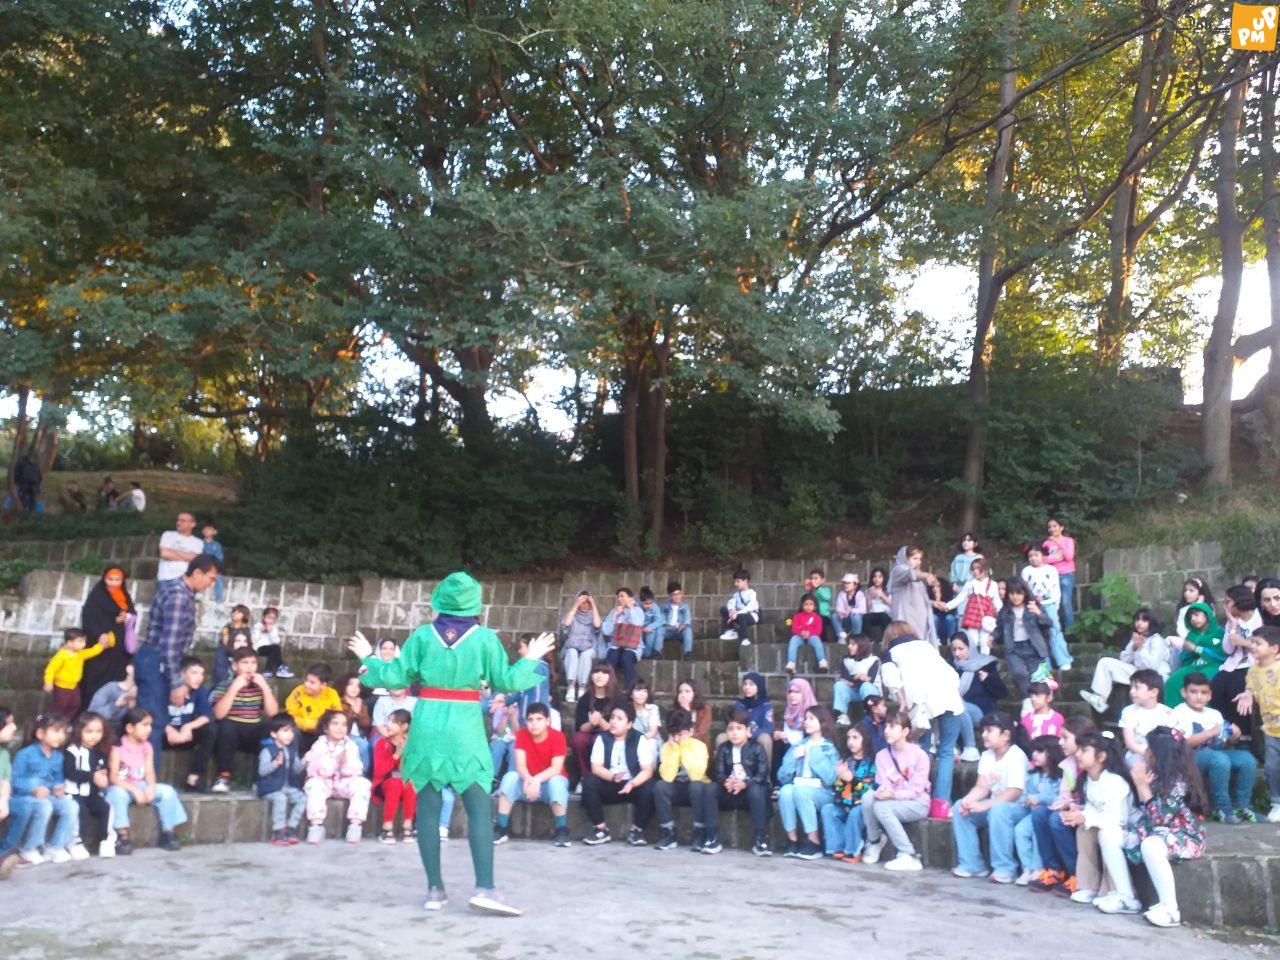 همزمان با روز کودک، نمایش اکتشافی در باغ کاشف السلطنه برگزار شد.